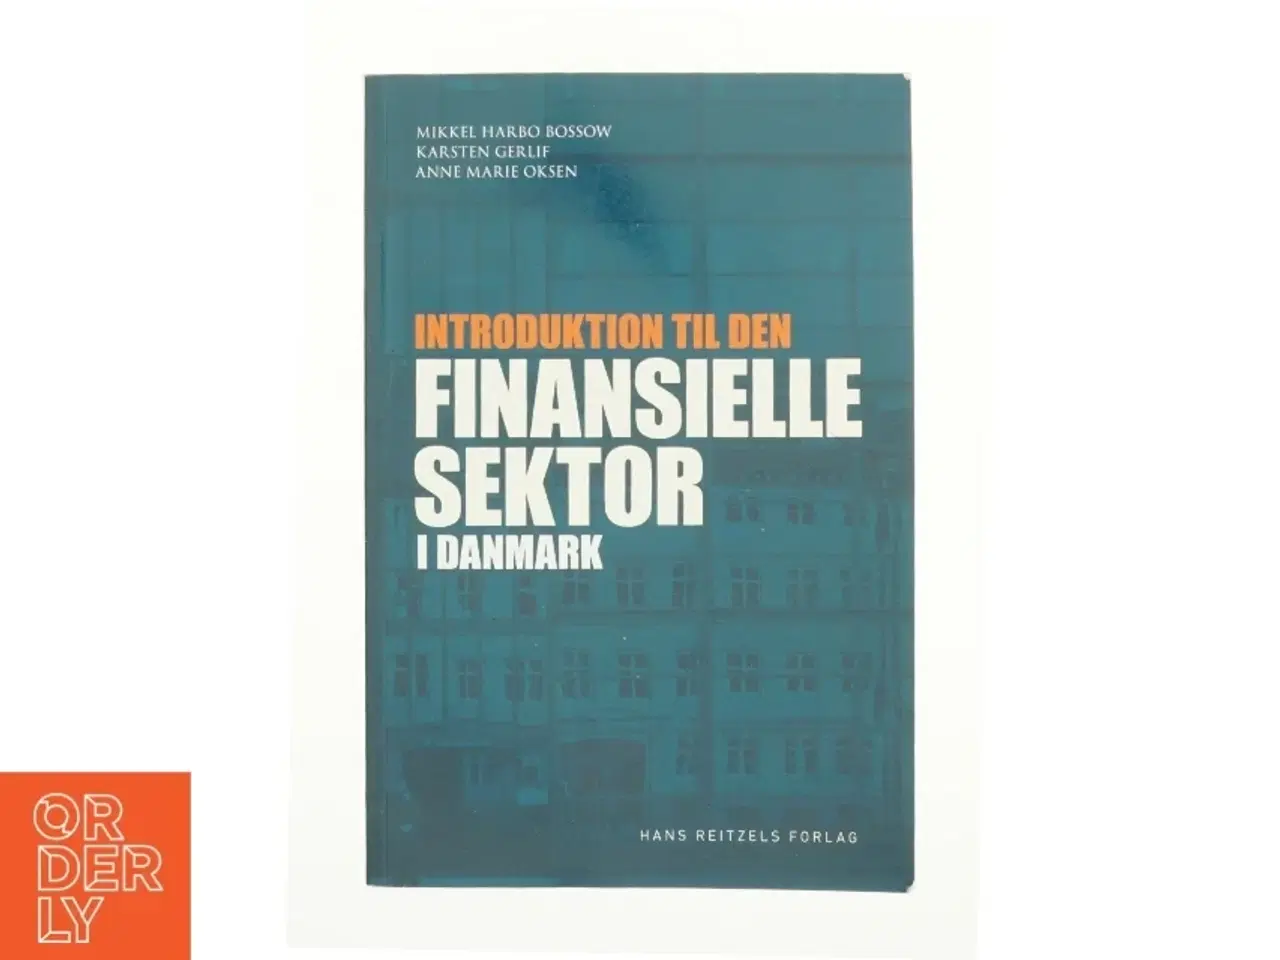 Billede 1 - Introduktion til den finansielle sektor i Danmark af Karsten Gerlif, Mikkel Harbo Bossow, Anne Marie Oksen (Bog)